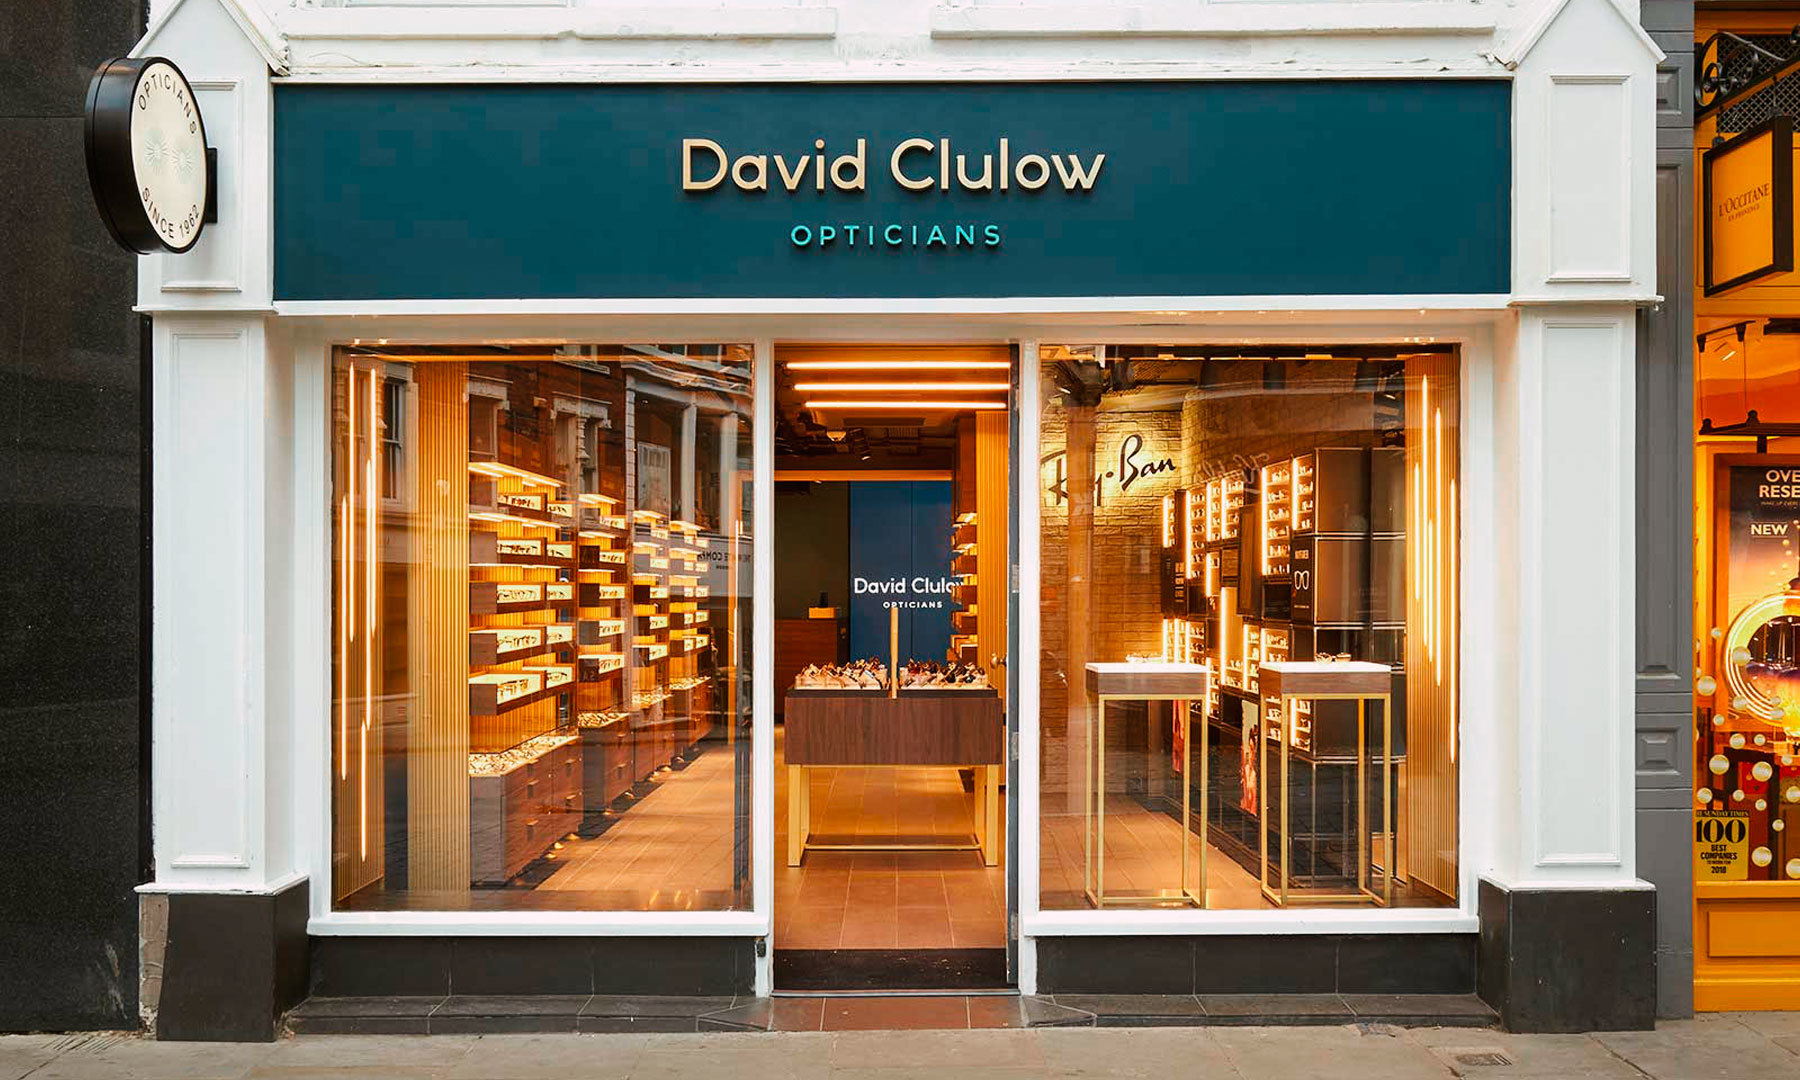 David Clulow opticians